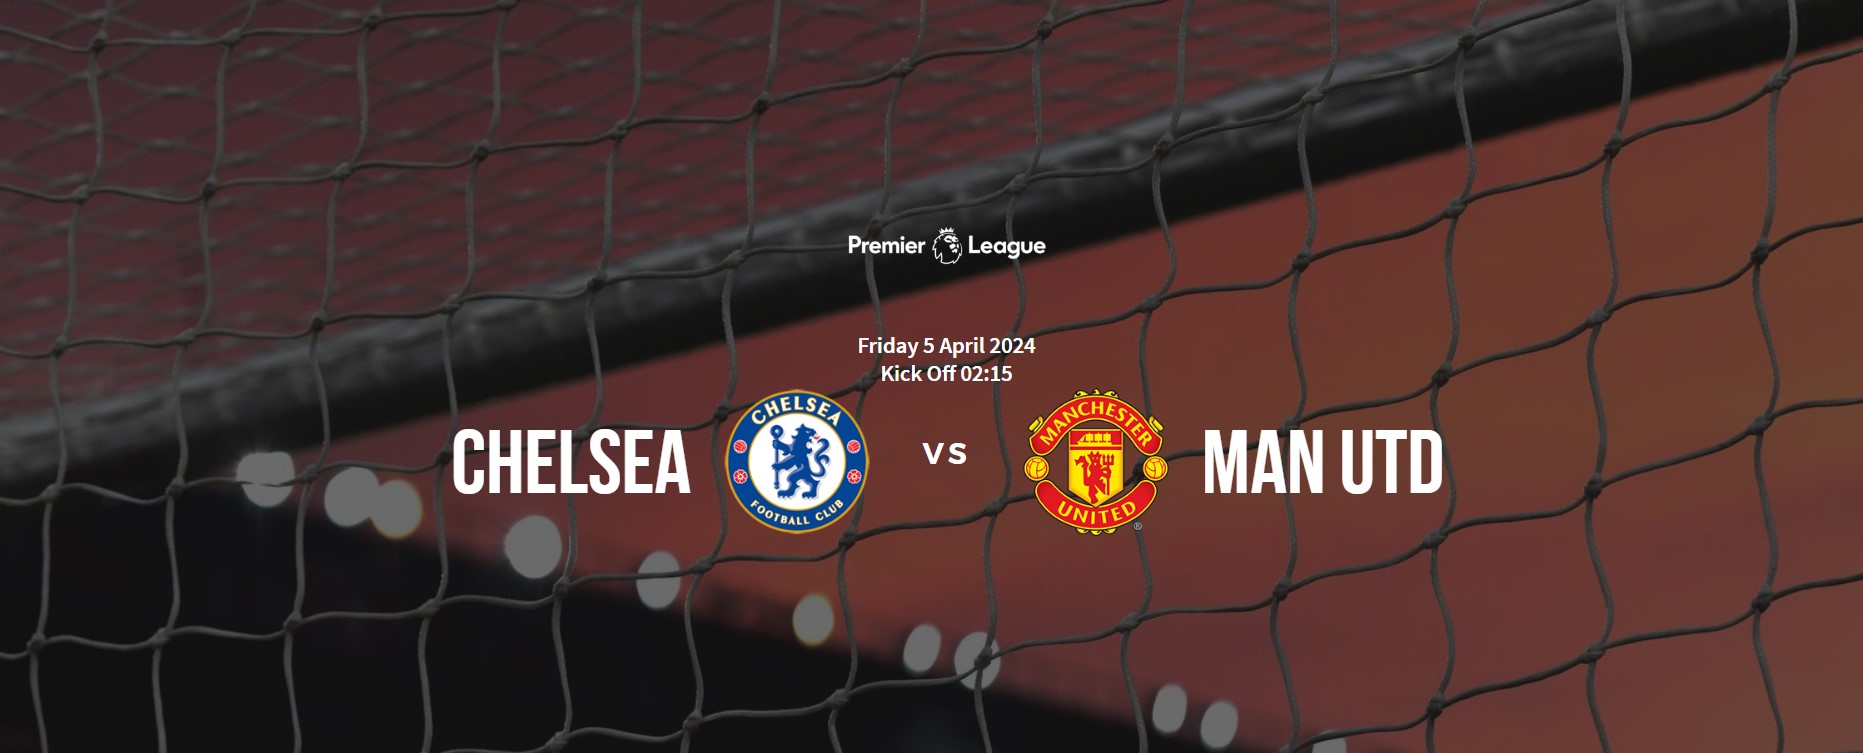 Prediksi Pertandingan Chelsea vs Manchester United Jumat, 5 April 2024: Bangkit atau Terpuruk!